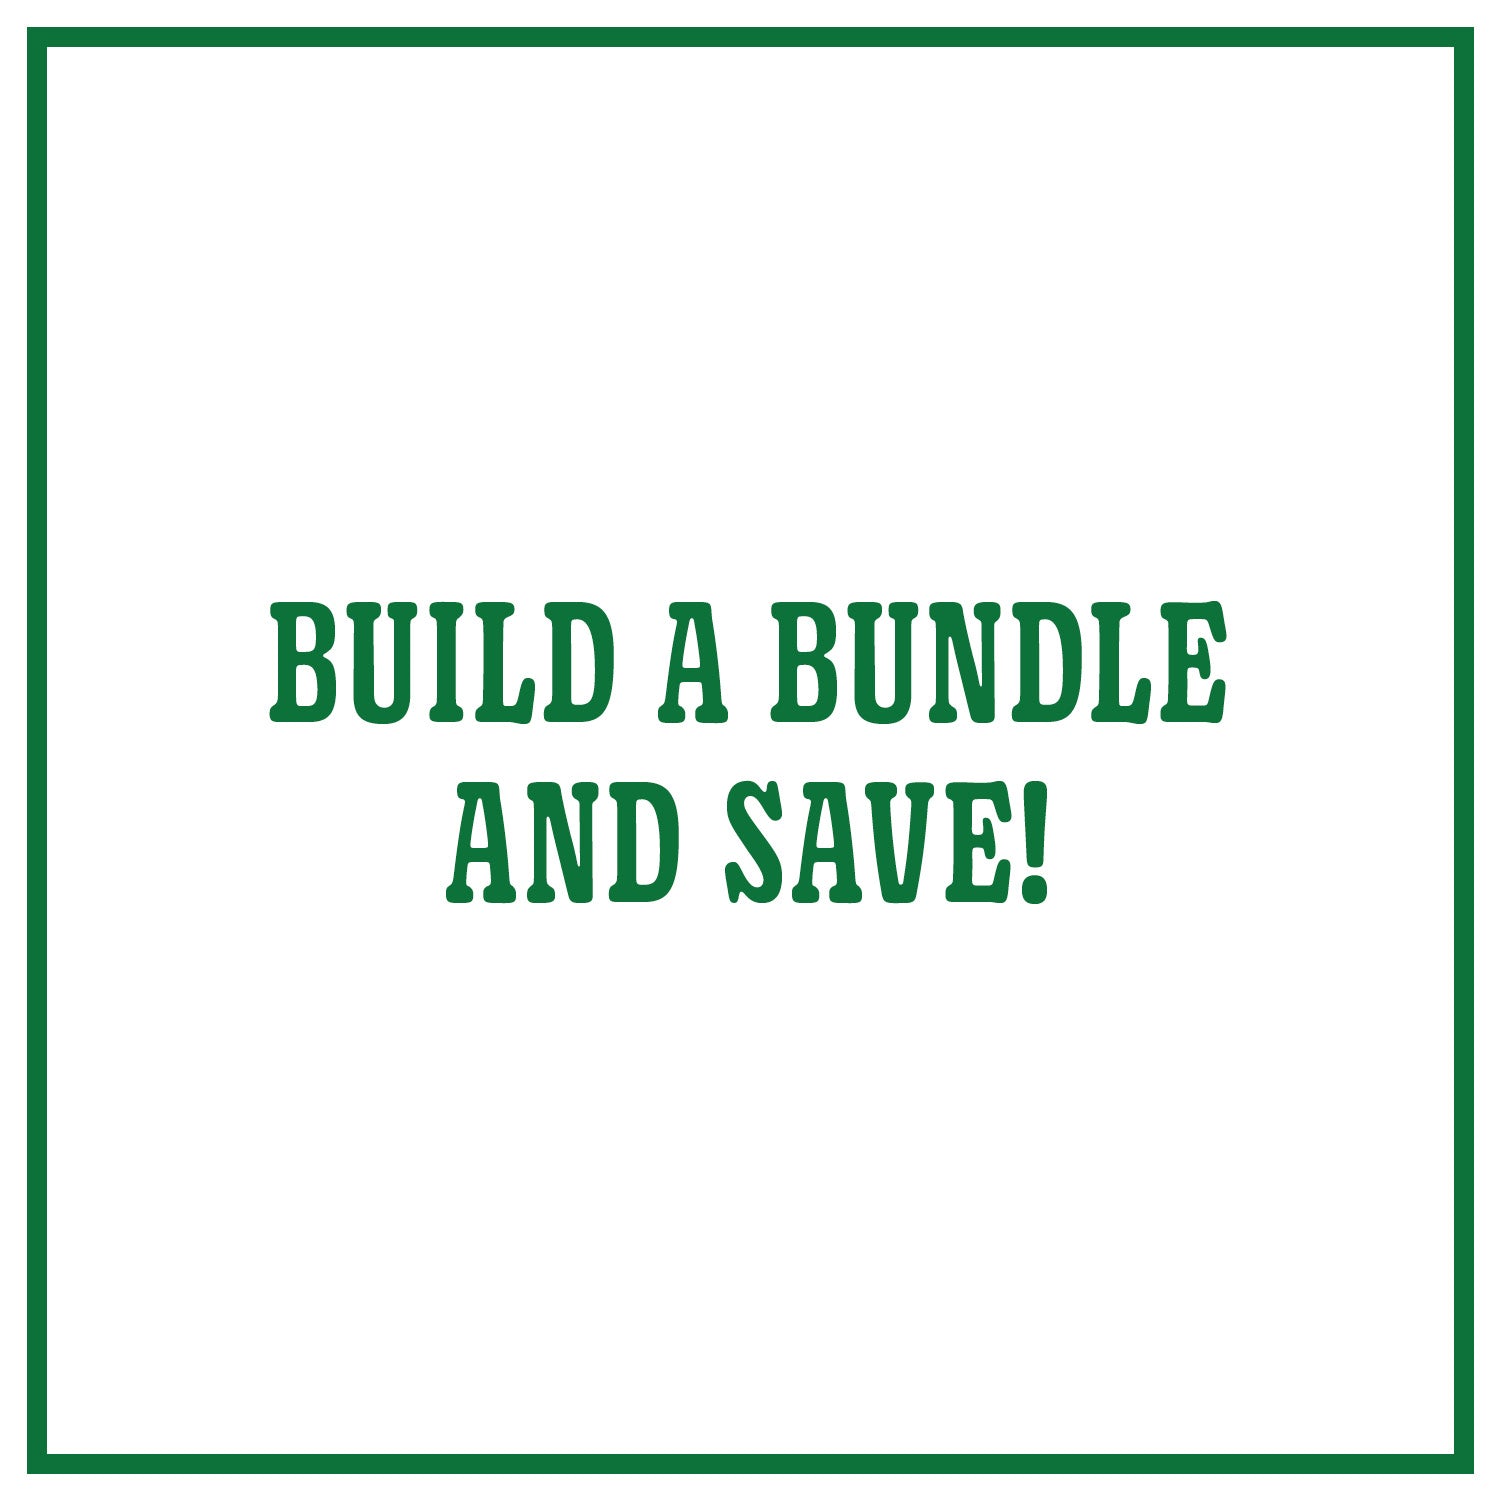 "Build a Bundle"